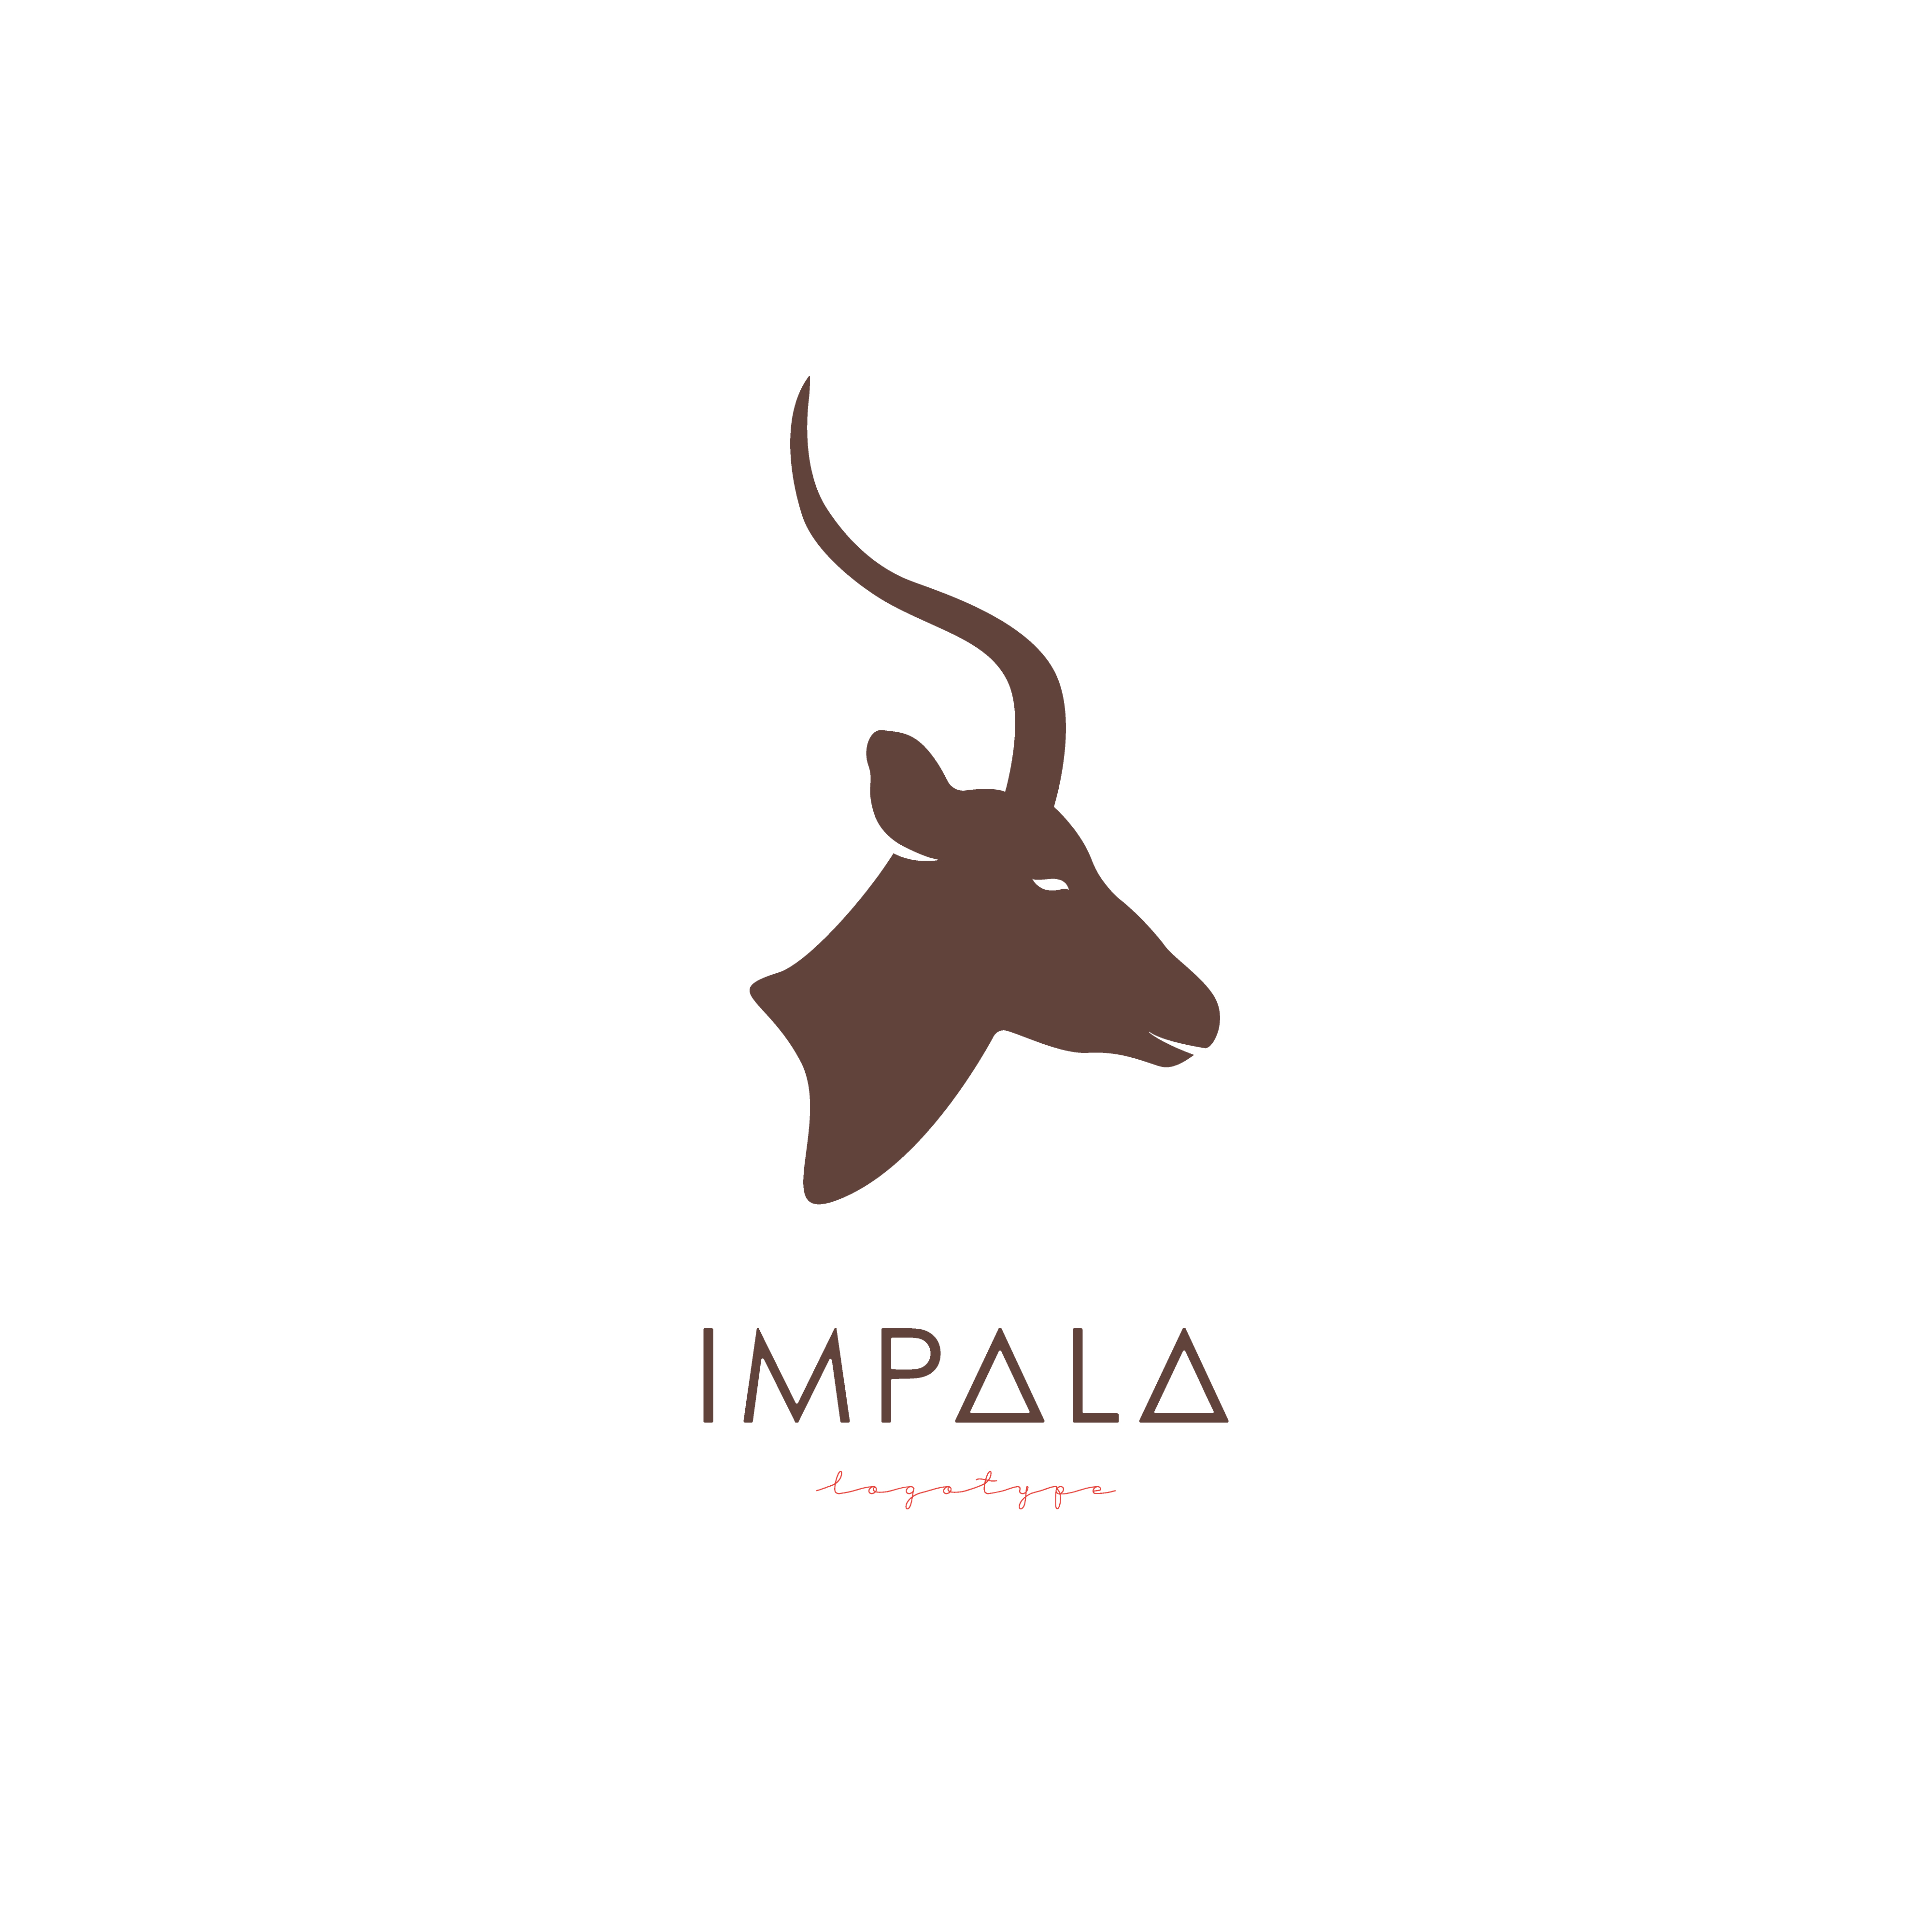 Artistic stylized Impala logotype. 655413 Vector Art at Vecteezy